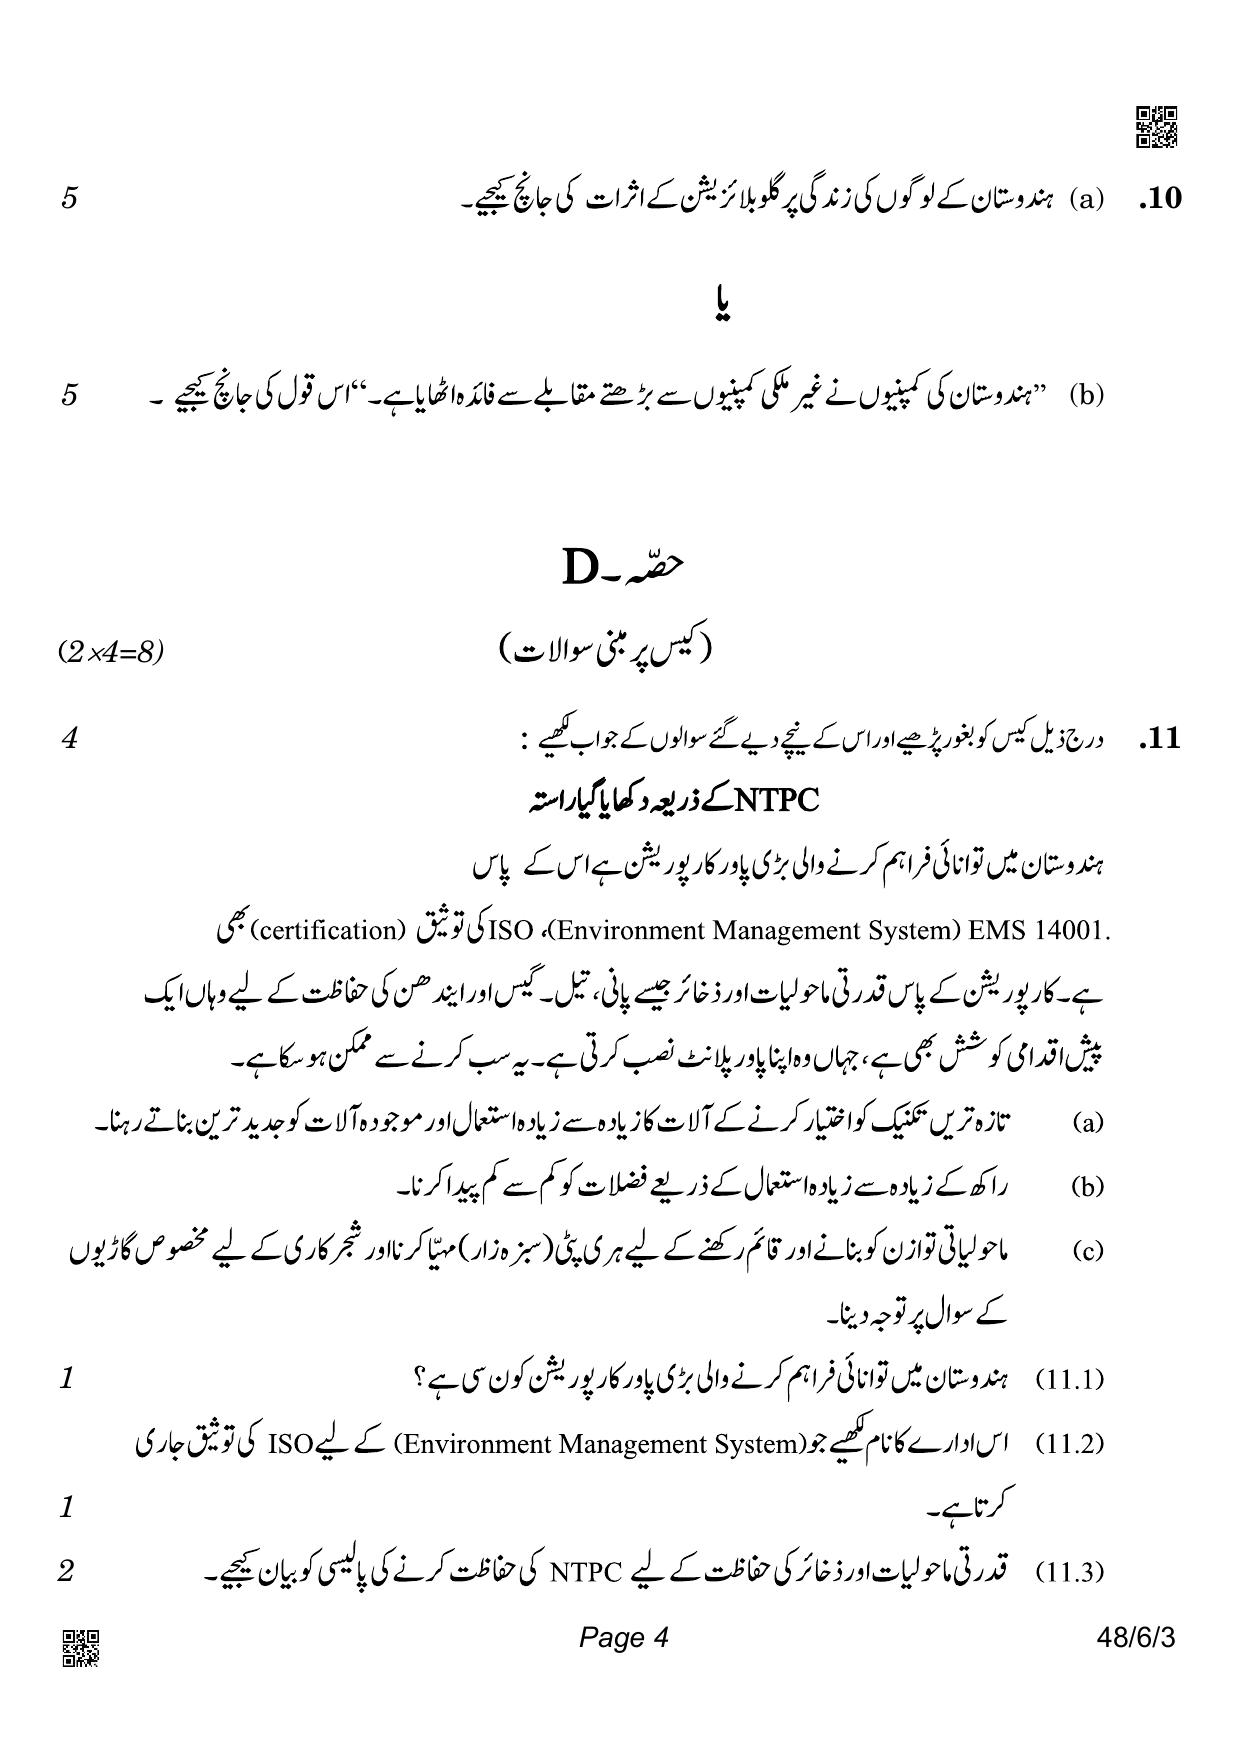 CBSE Class 10 48-6-3_Social Science Urdu Version 2022 Compartment Question Paper - Page 4